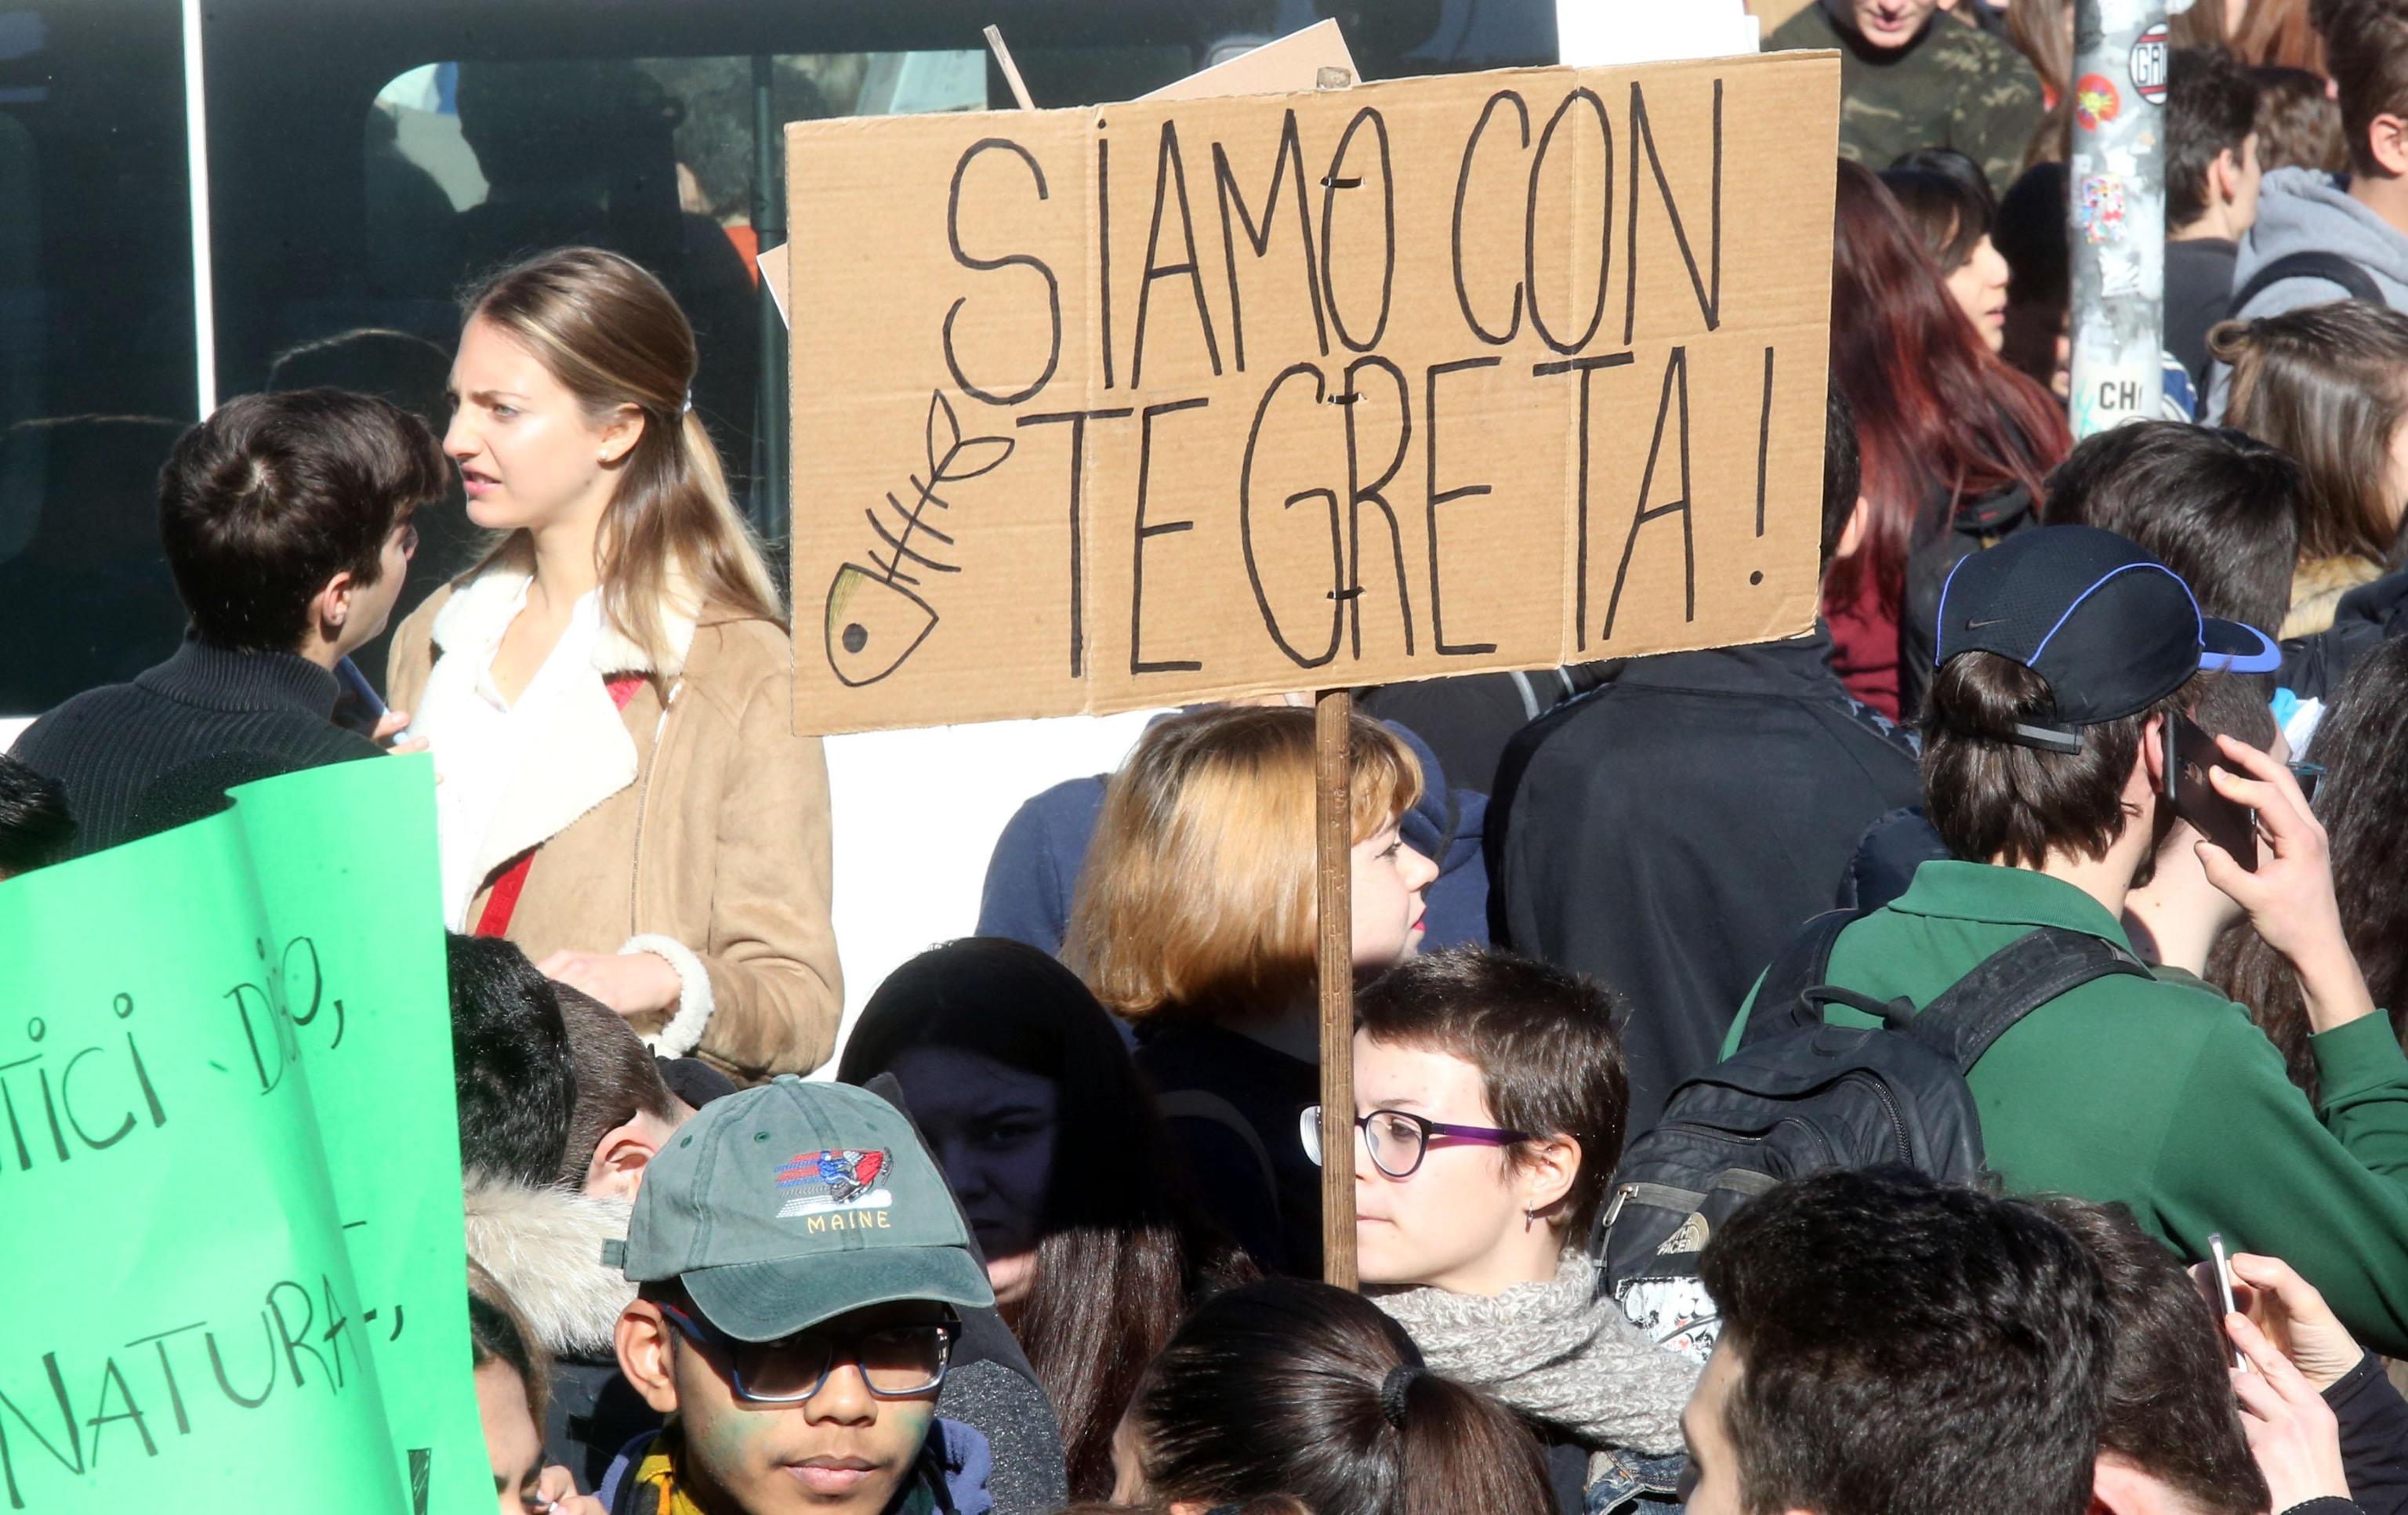 La protesta arriva anche in Italia, a Milano, dove gli studenti hanno espresso vicinanza agli ideali di Greta